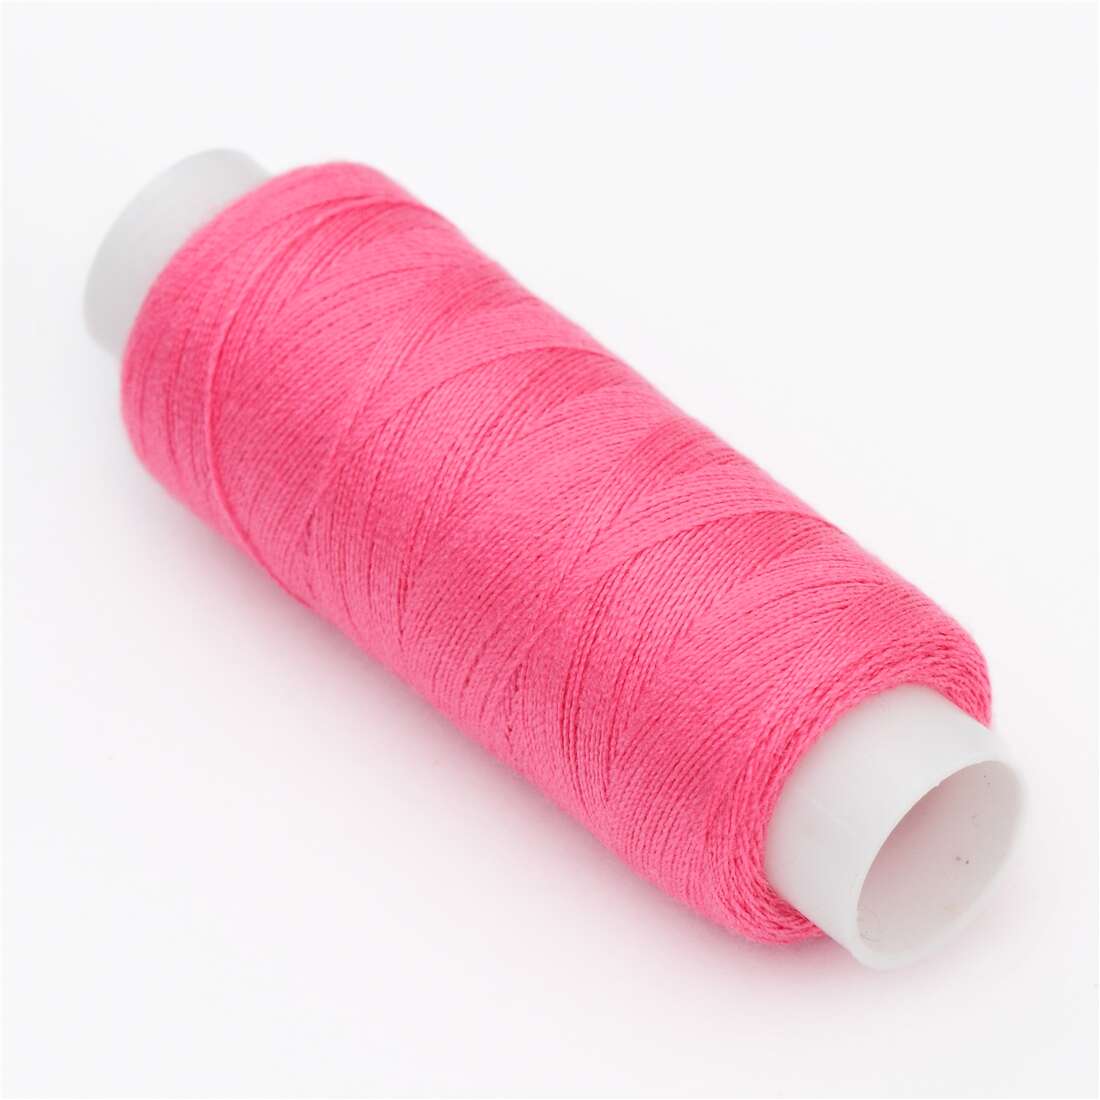 thread 43 in hot pink - modeS4u